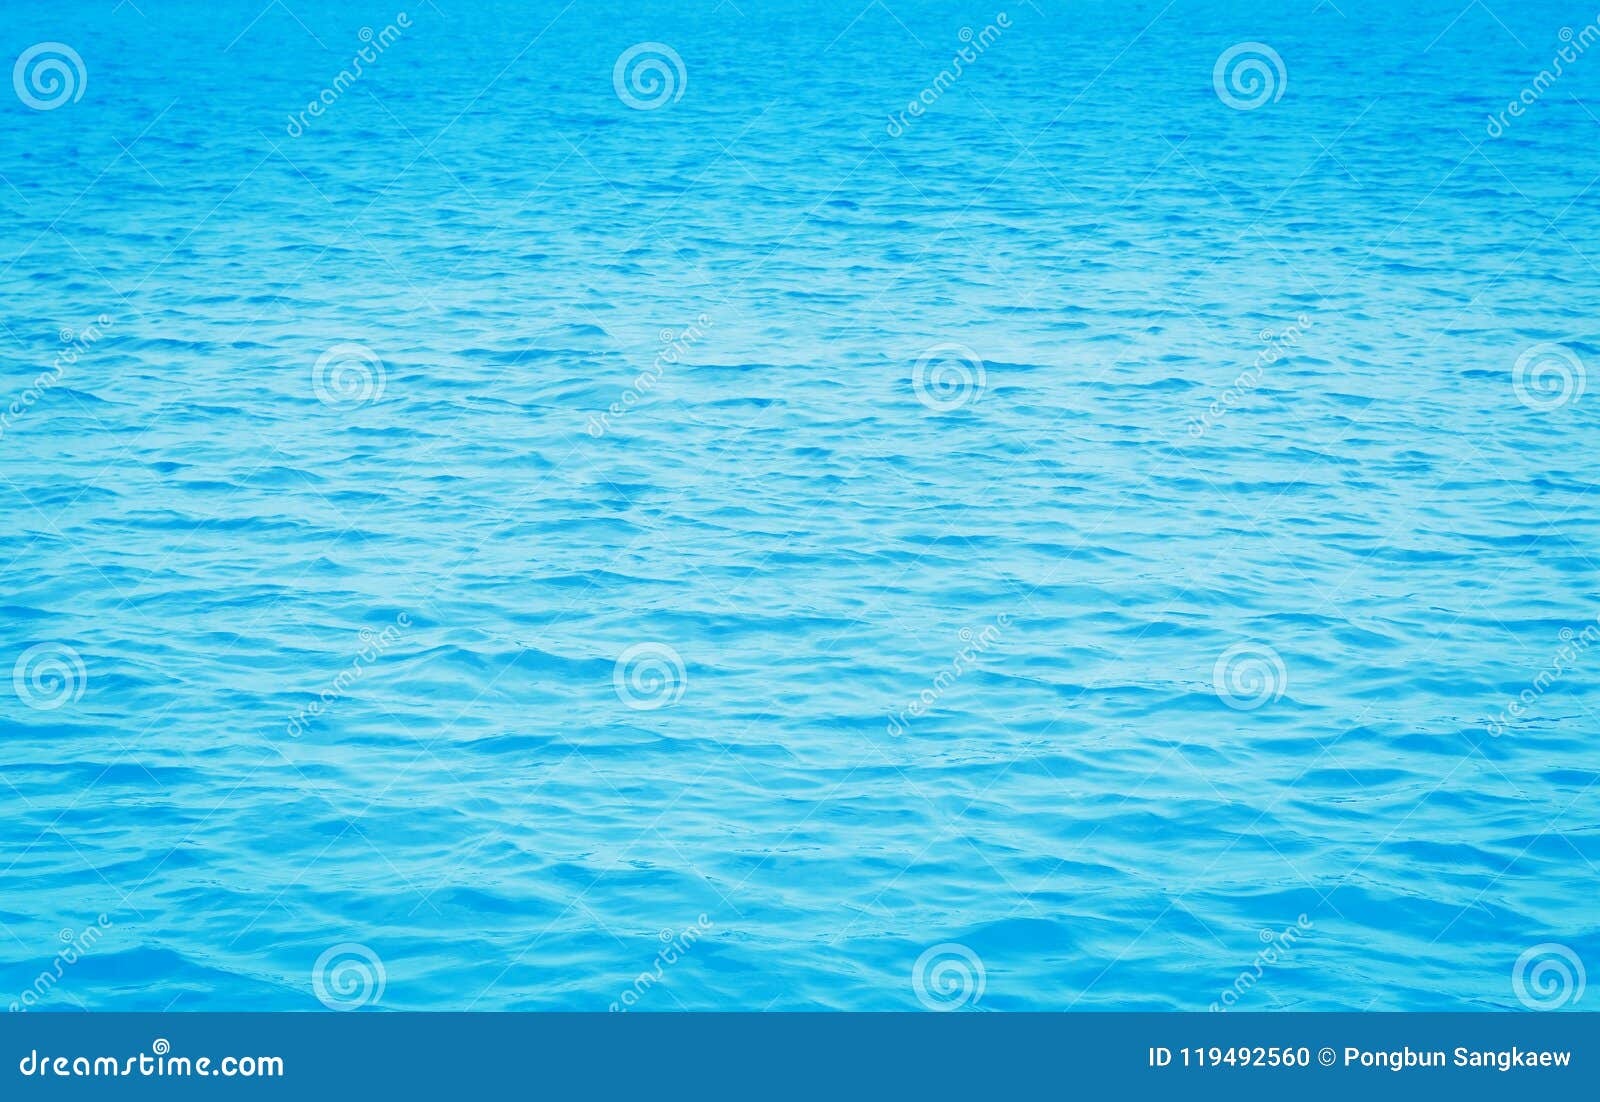 Với Blue Sea Water Texture, bạn sẽ có cơ hội được trải nghiệm một màu xanh biển tuyệt đẹp, sự kết hợp tinh tế giữa màu sắc và độ rõ nét của các hạt muối. Điều này sẽ đem đến cho bạn cảm giác thư giãn và thoải mái khi nhìn vào, hãy khám phá ngay hôm nay!